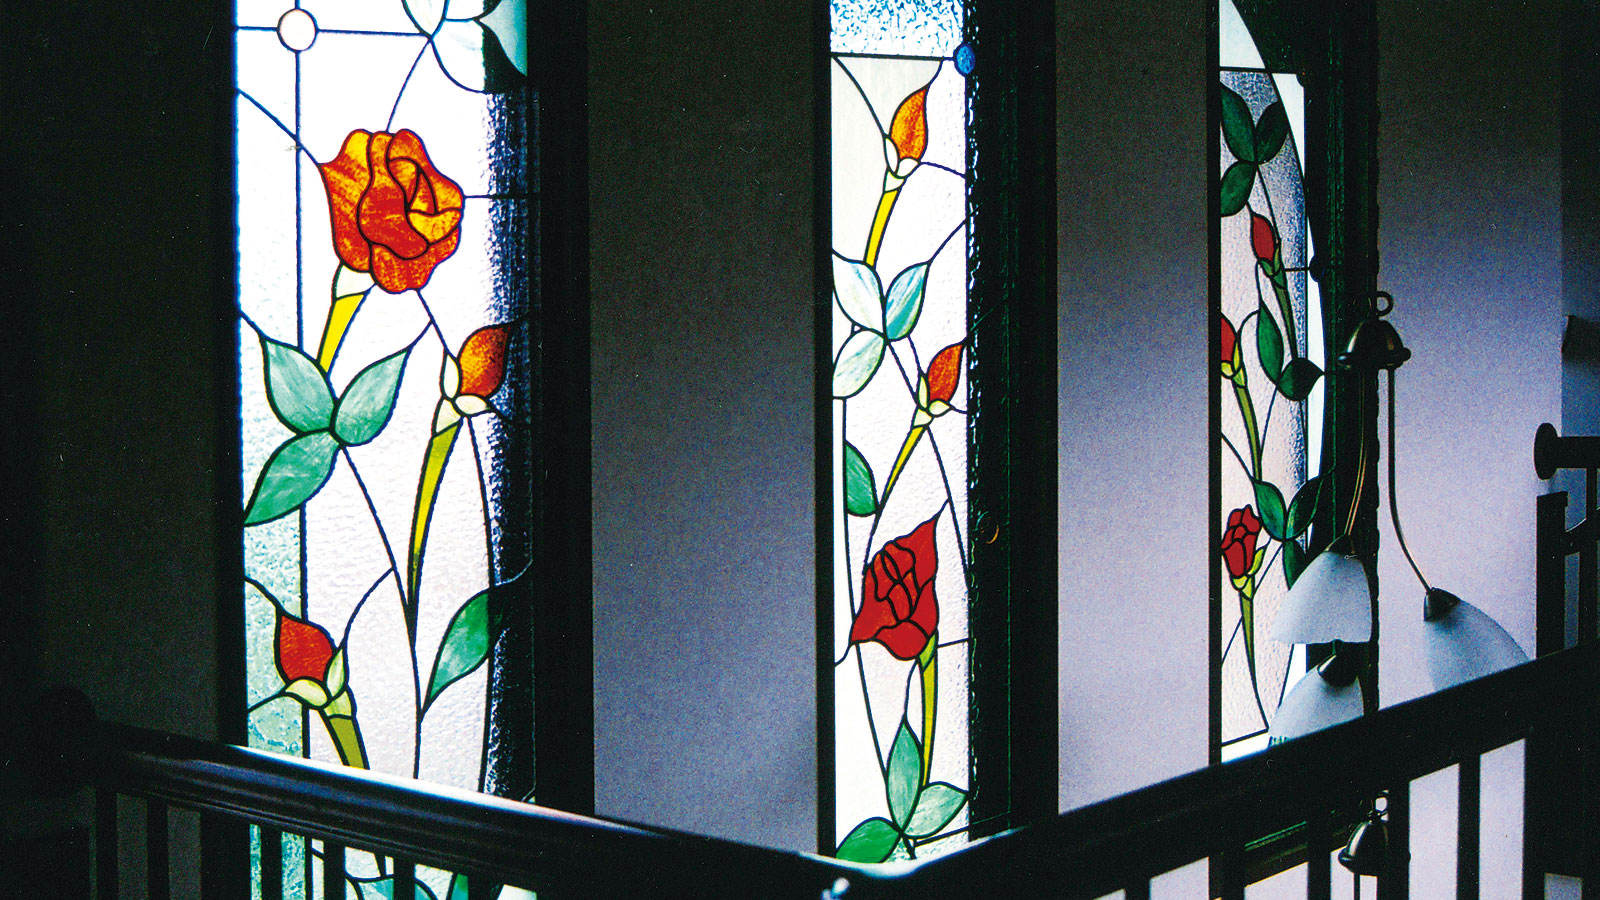 ステンドグラスの武蔵野工房 - エレガントな光の芸術